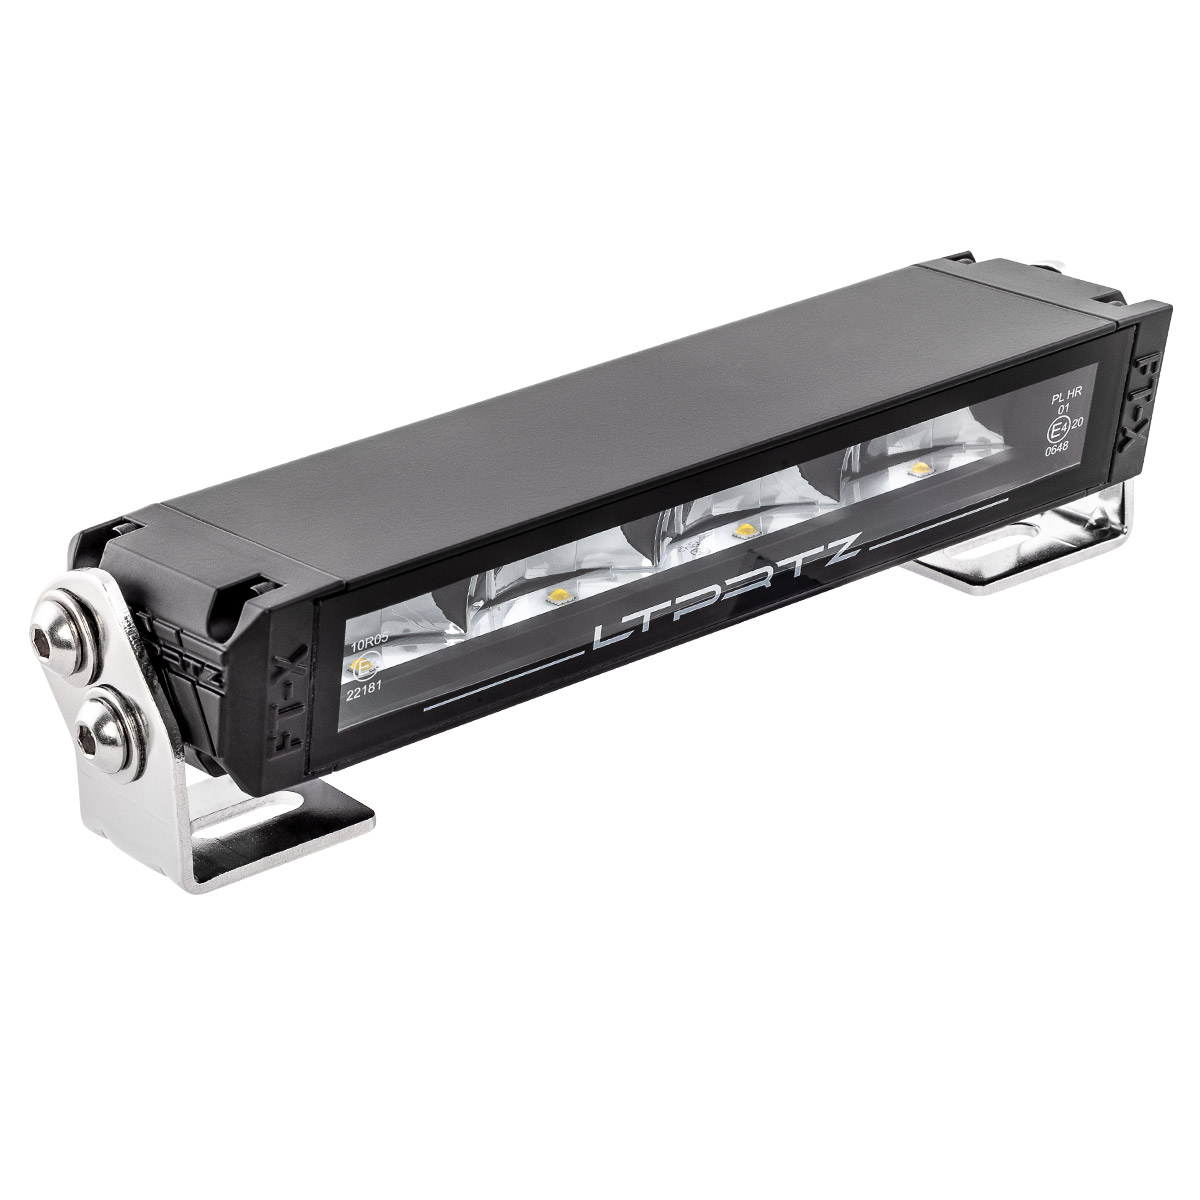 Lightpartz Flat-X 9" LED Fernscheinwerfer 30° Lightbar ECE